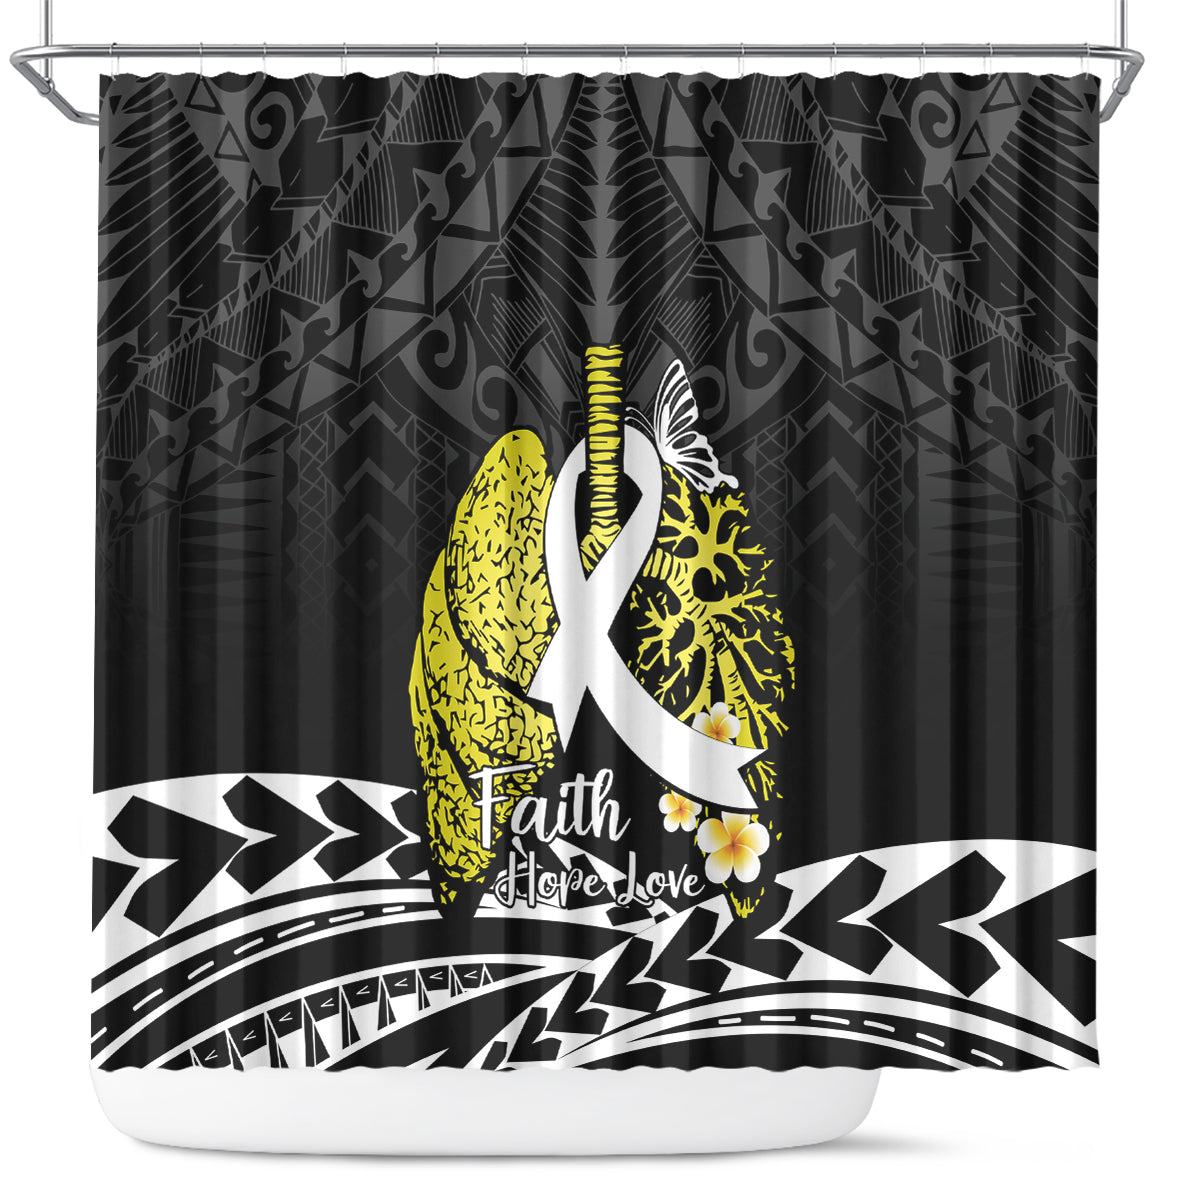 Polynesia World Lung Cancer Day Shower Curtain Faith Hope Love